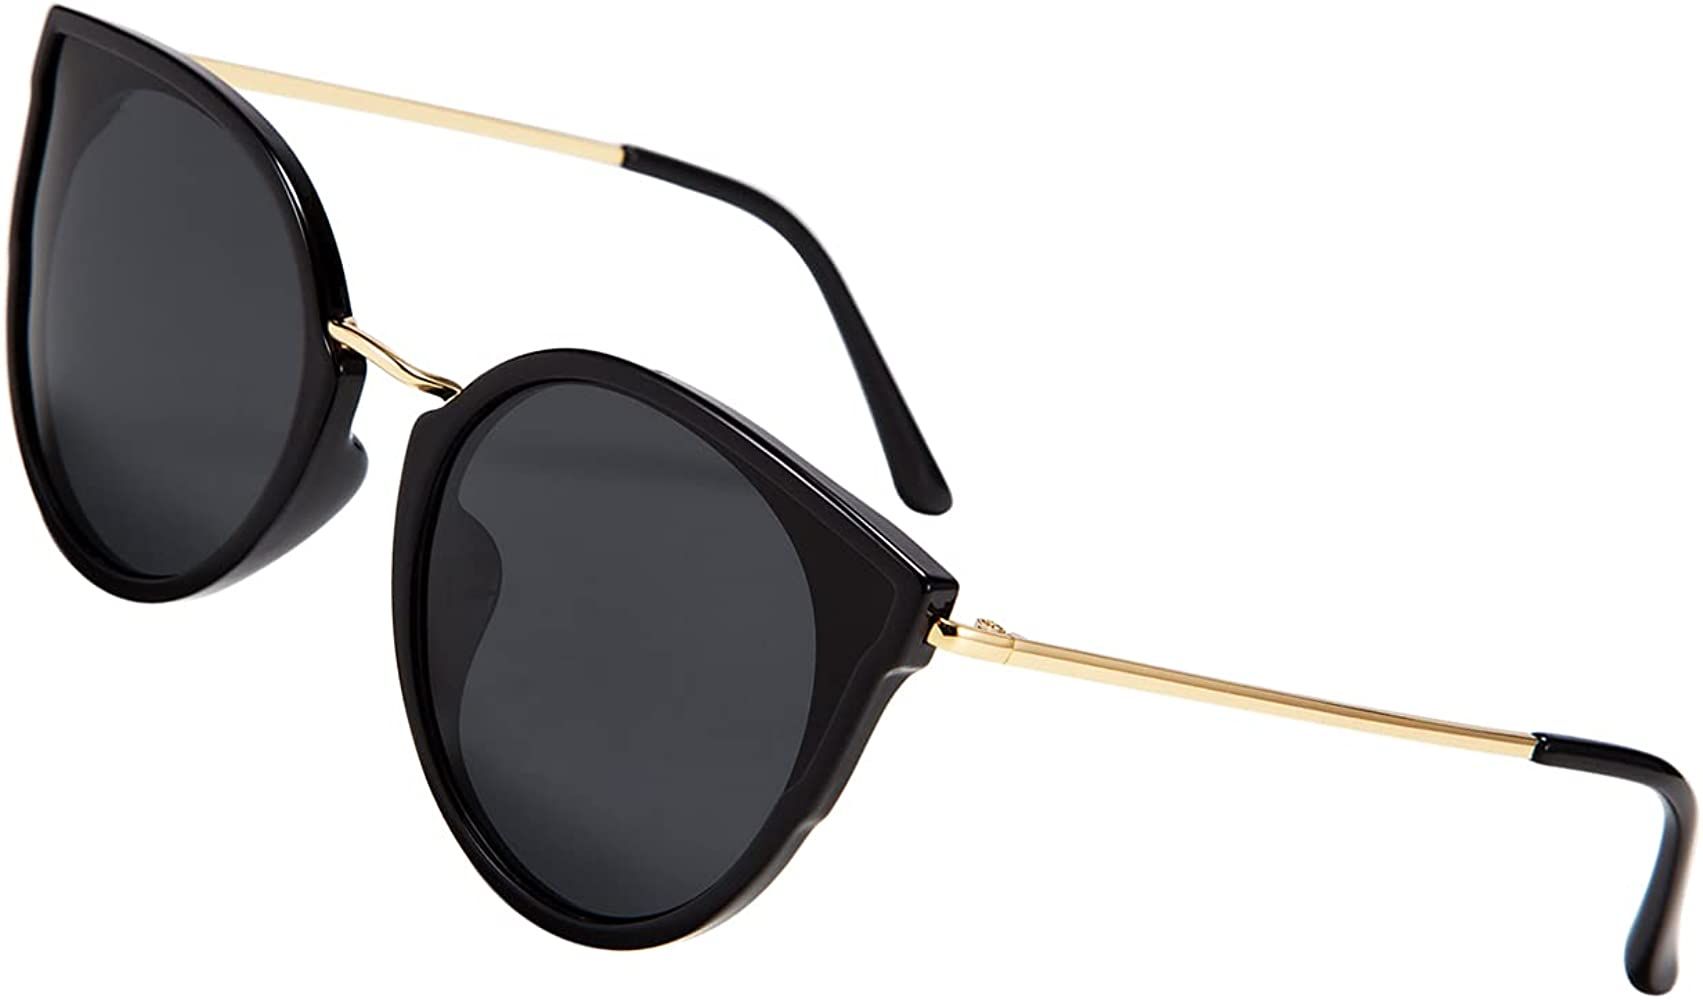 FEISEDY Women Chic Polarized Cat Eye Sunglasses Vintage Oversized Round Sunglasses Anti Glare B70... | Amazon (US)